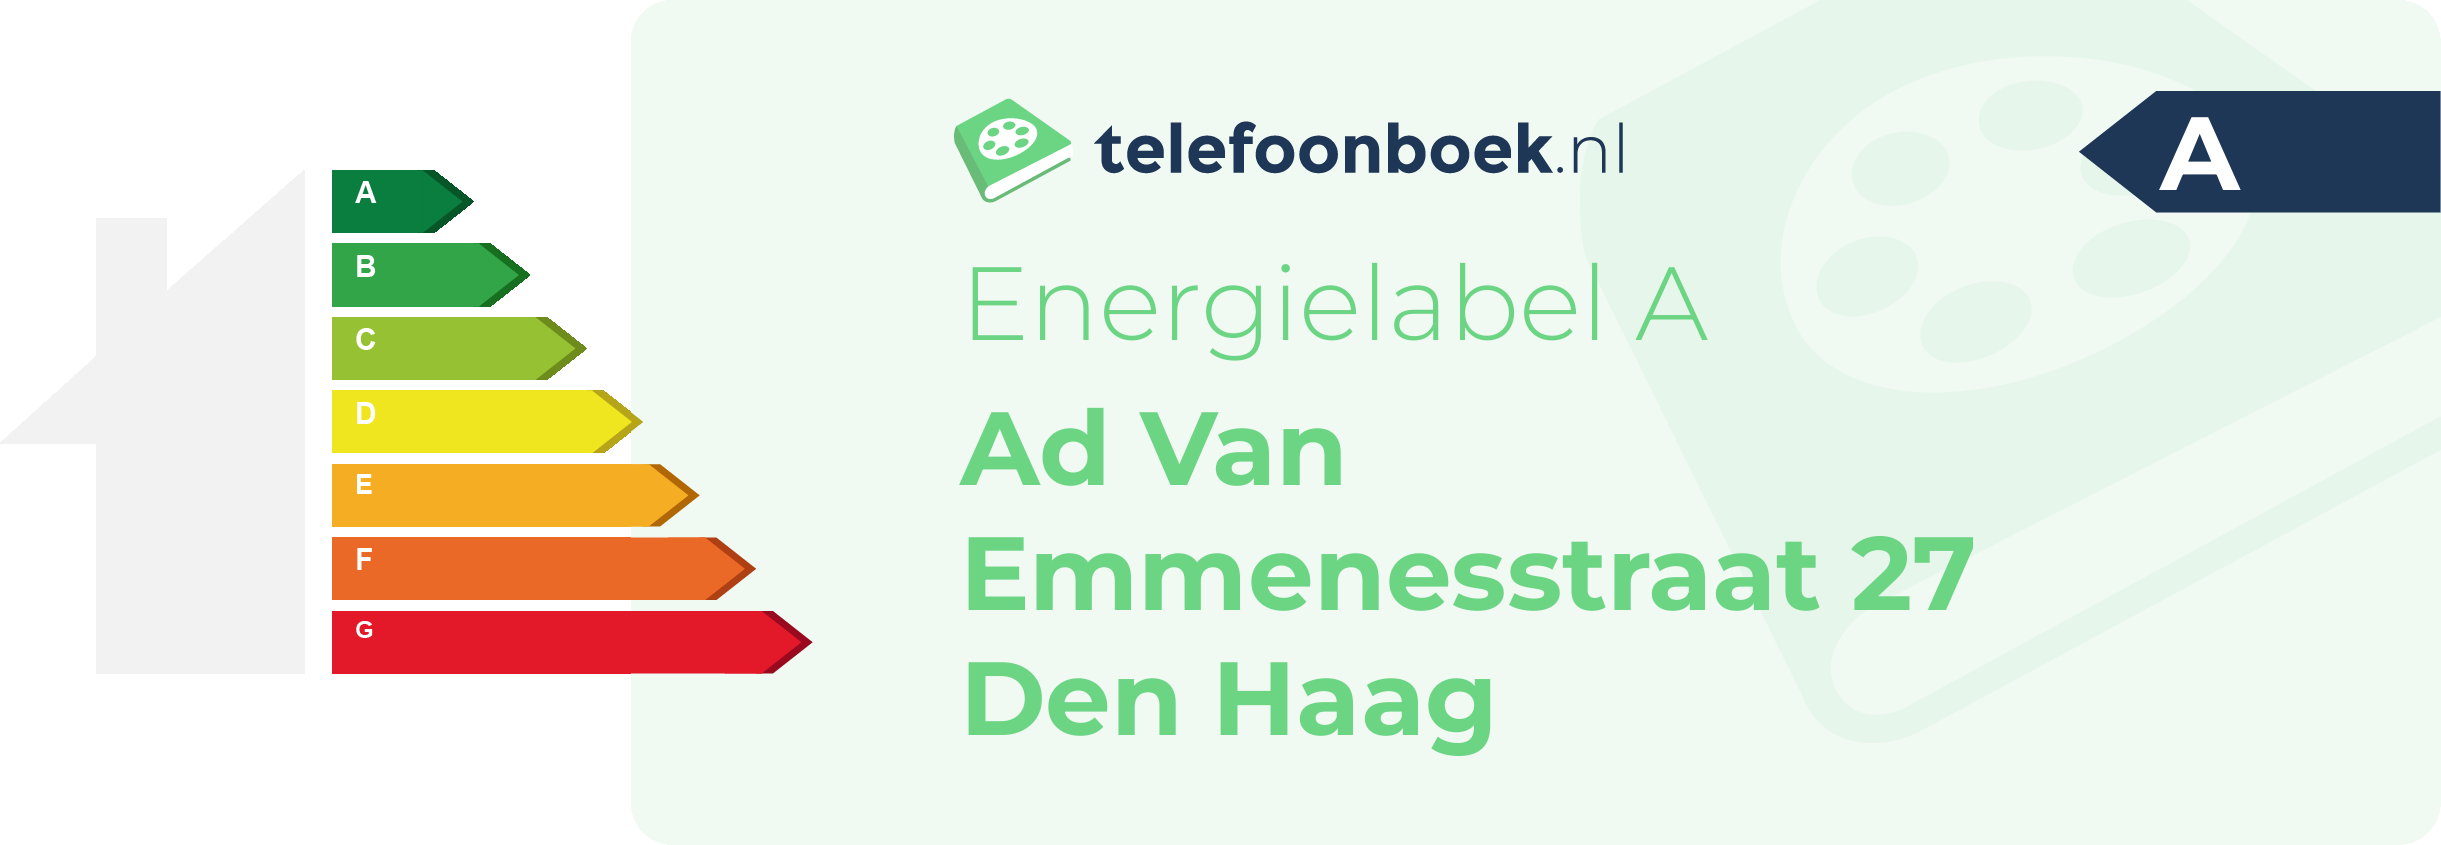 Energielabel Ad Van Emmenesstraat 27 Den Haag